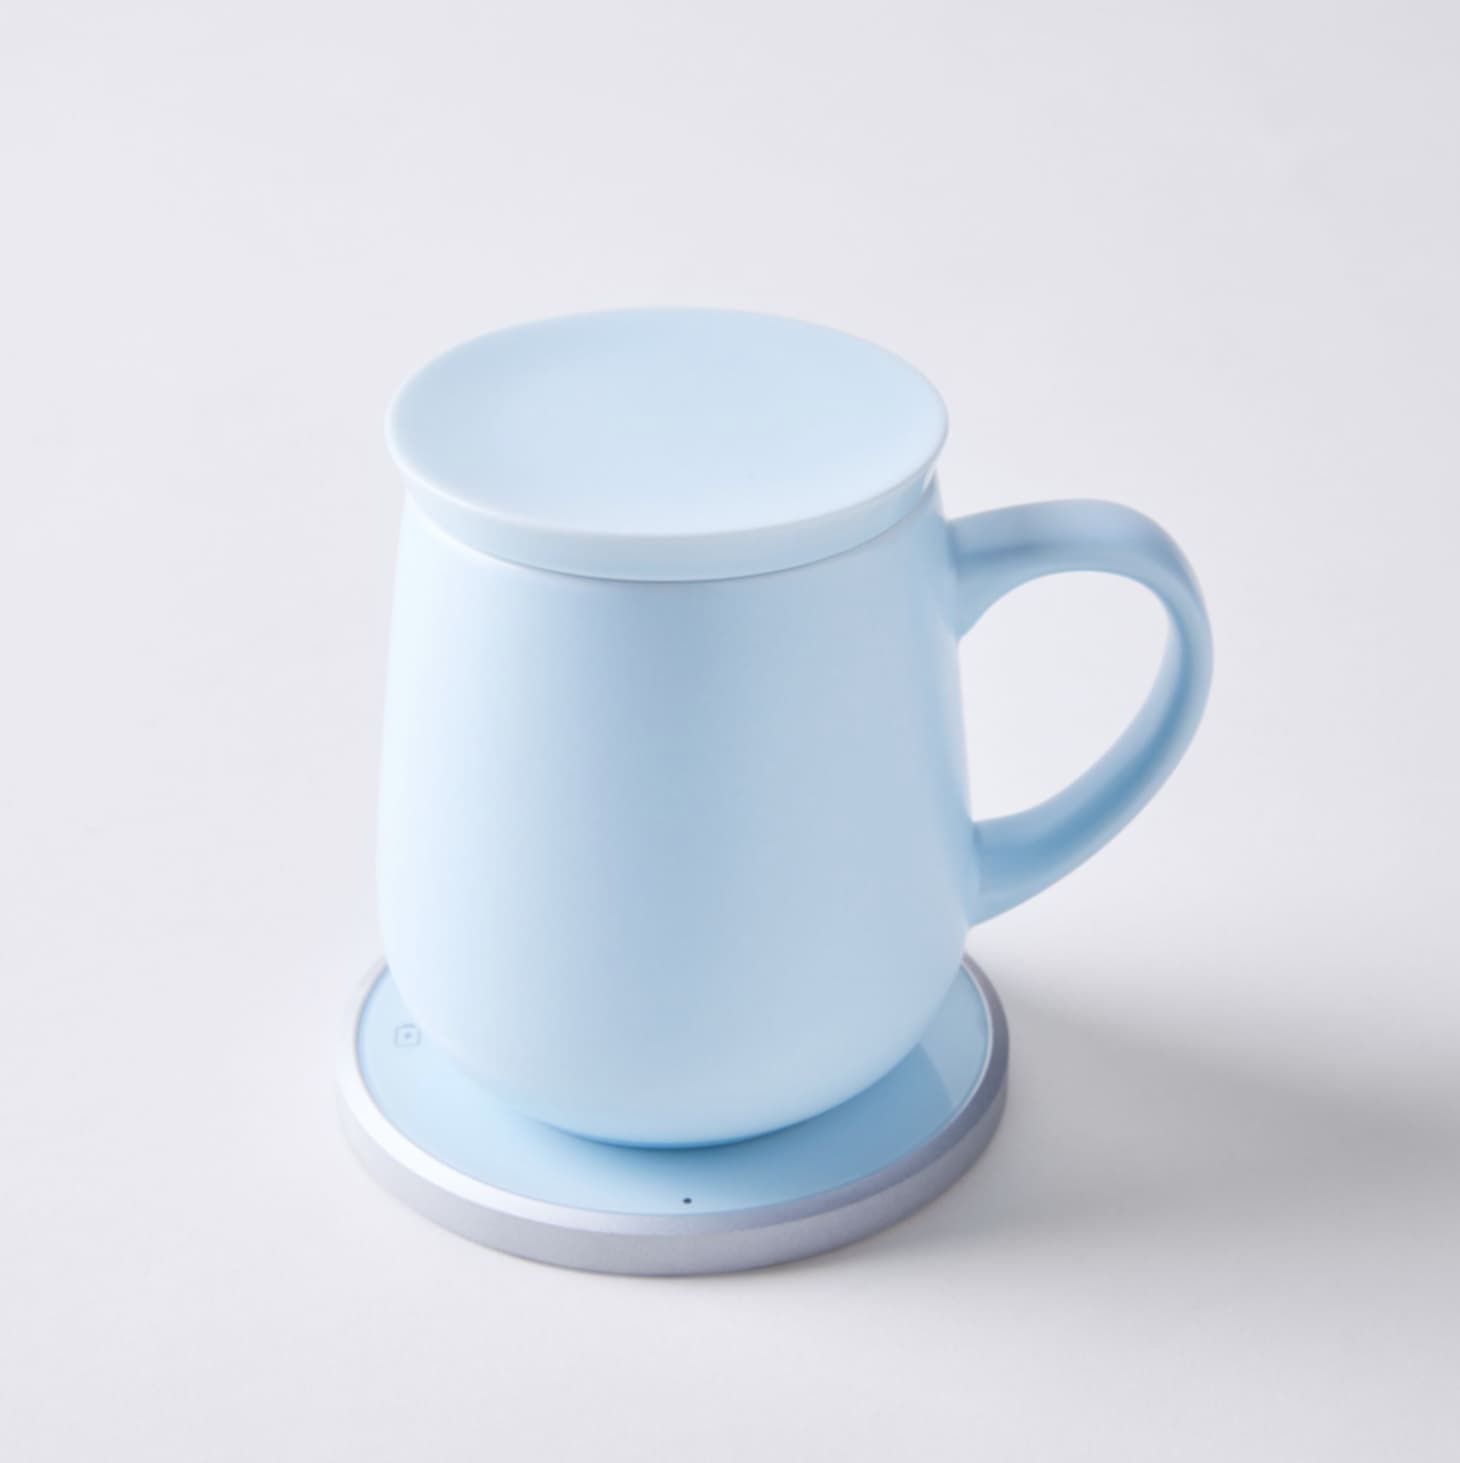 OHOM Self Heating Ceramic Mug on Food52